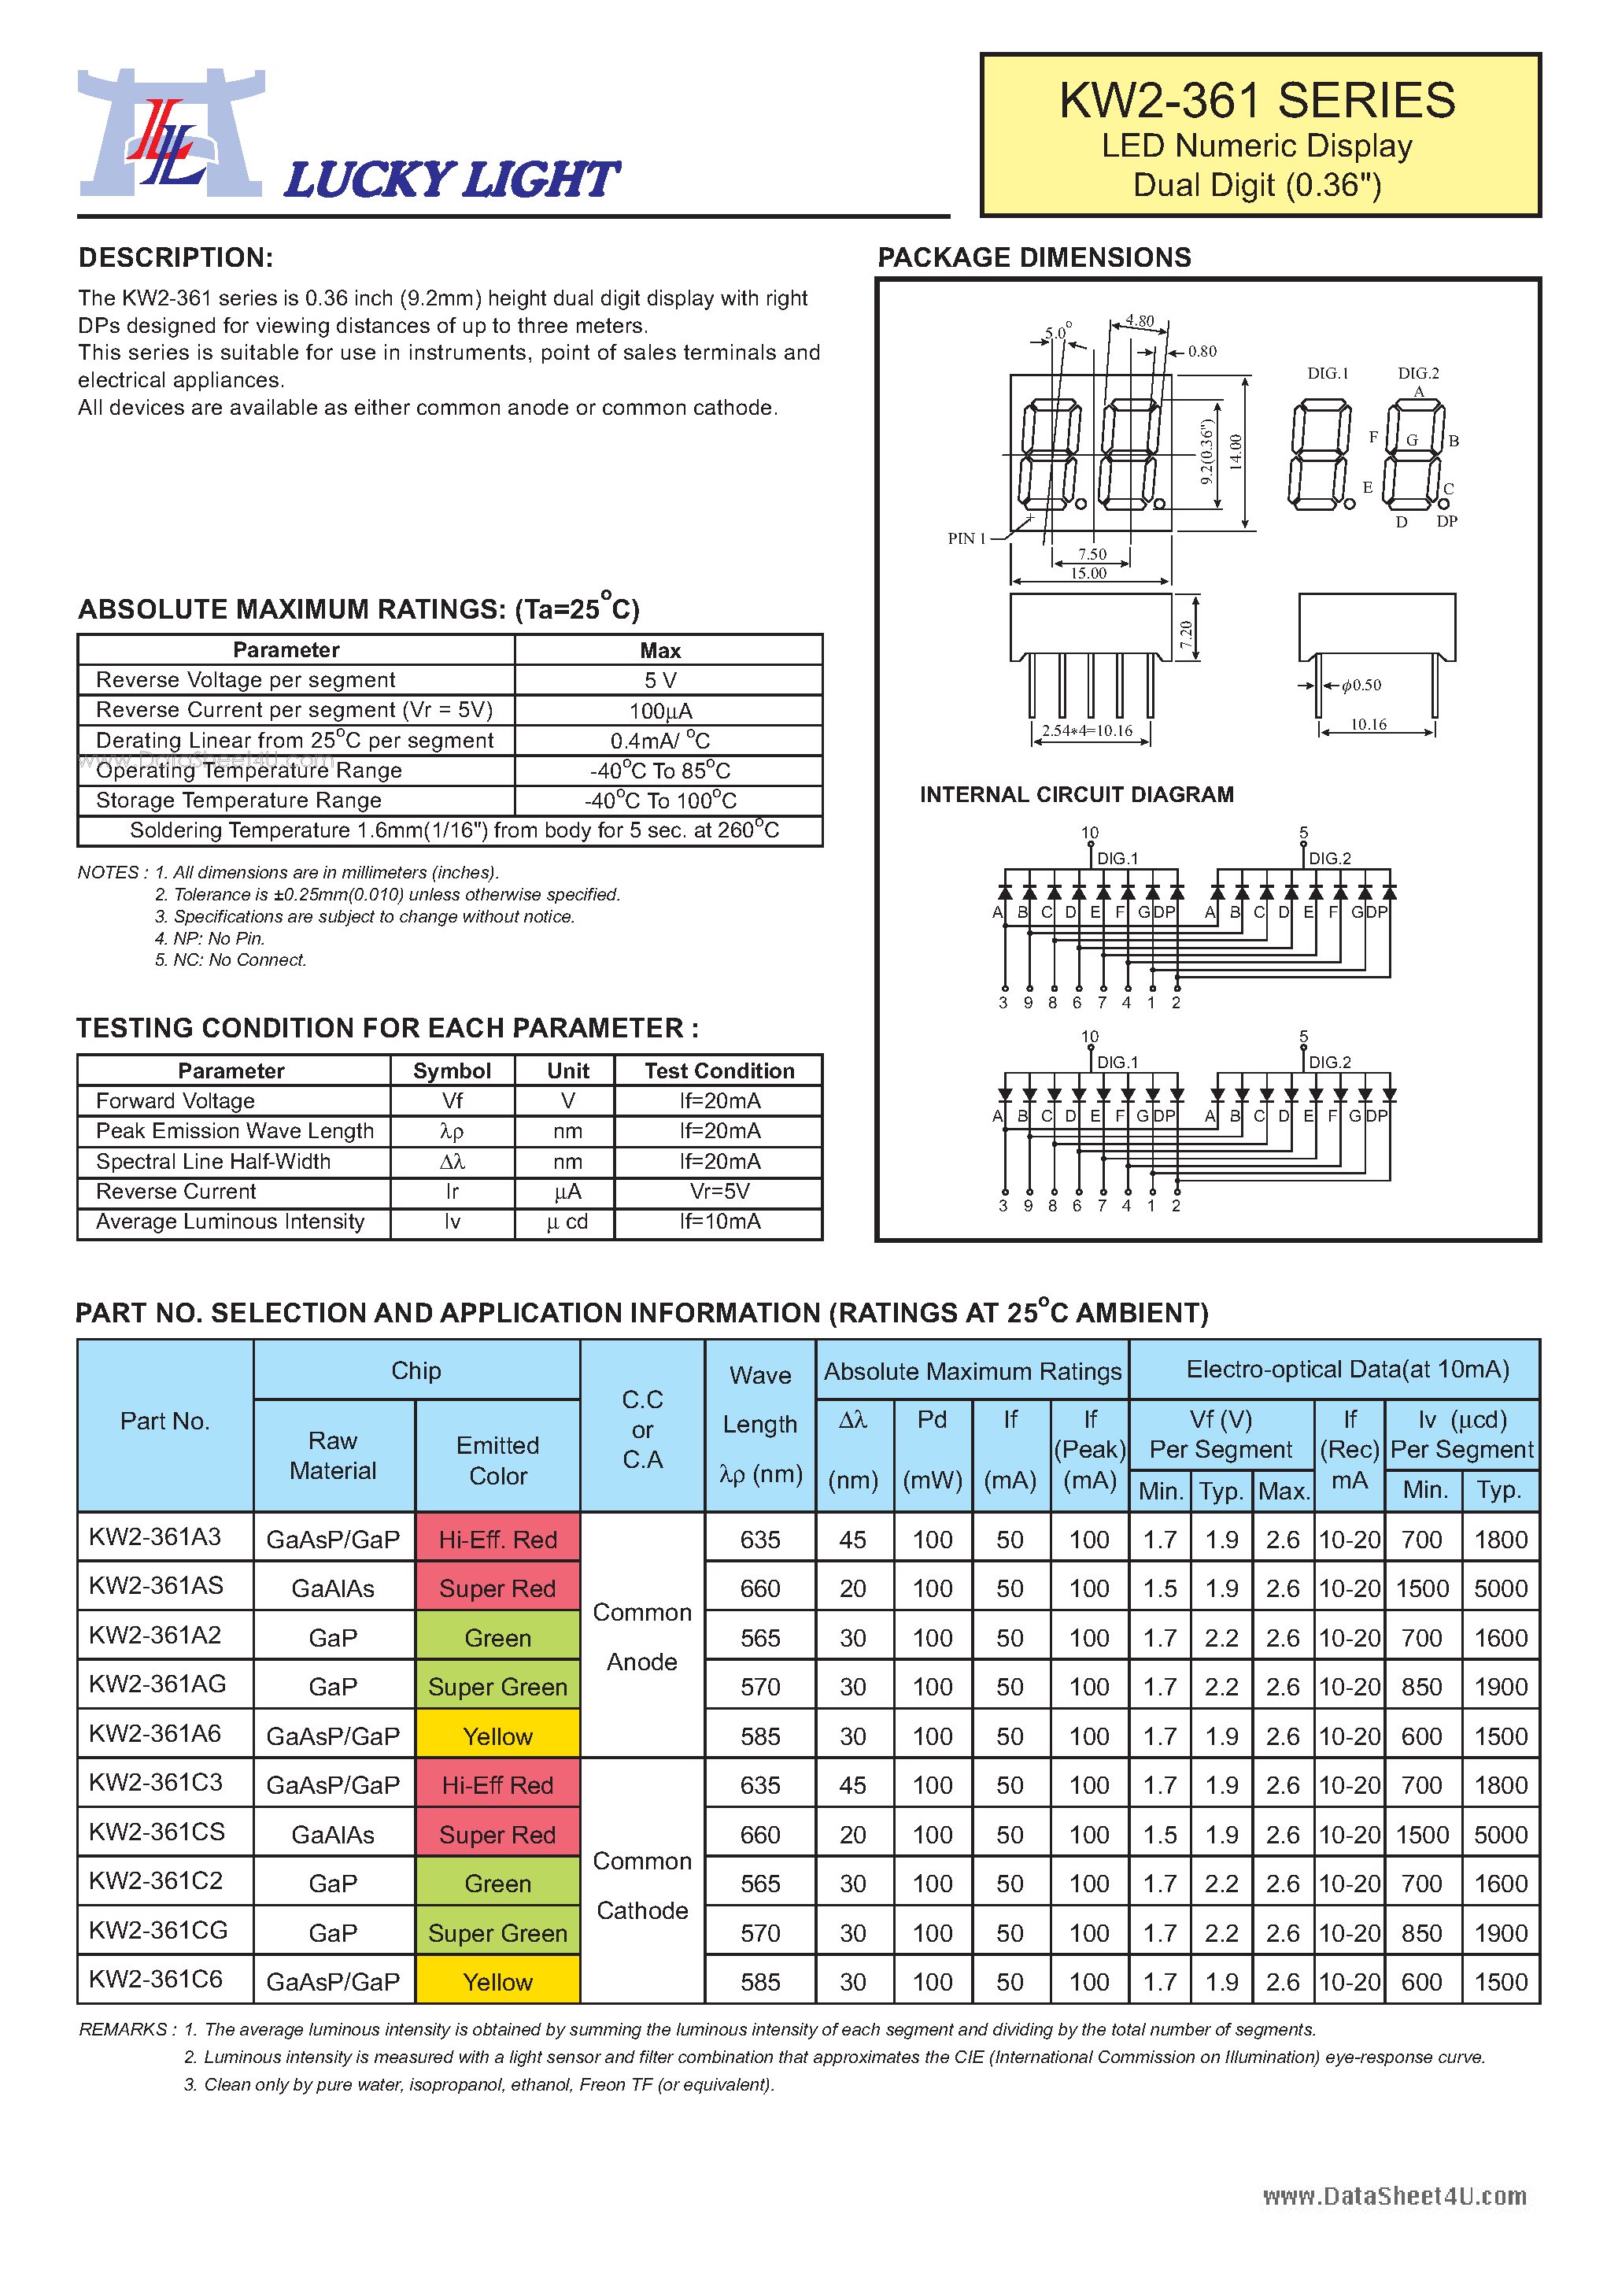 Datasheet KW2-361 - LED Numeric Display page 1